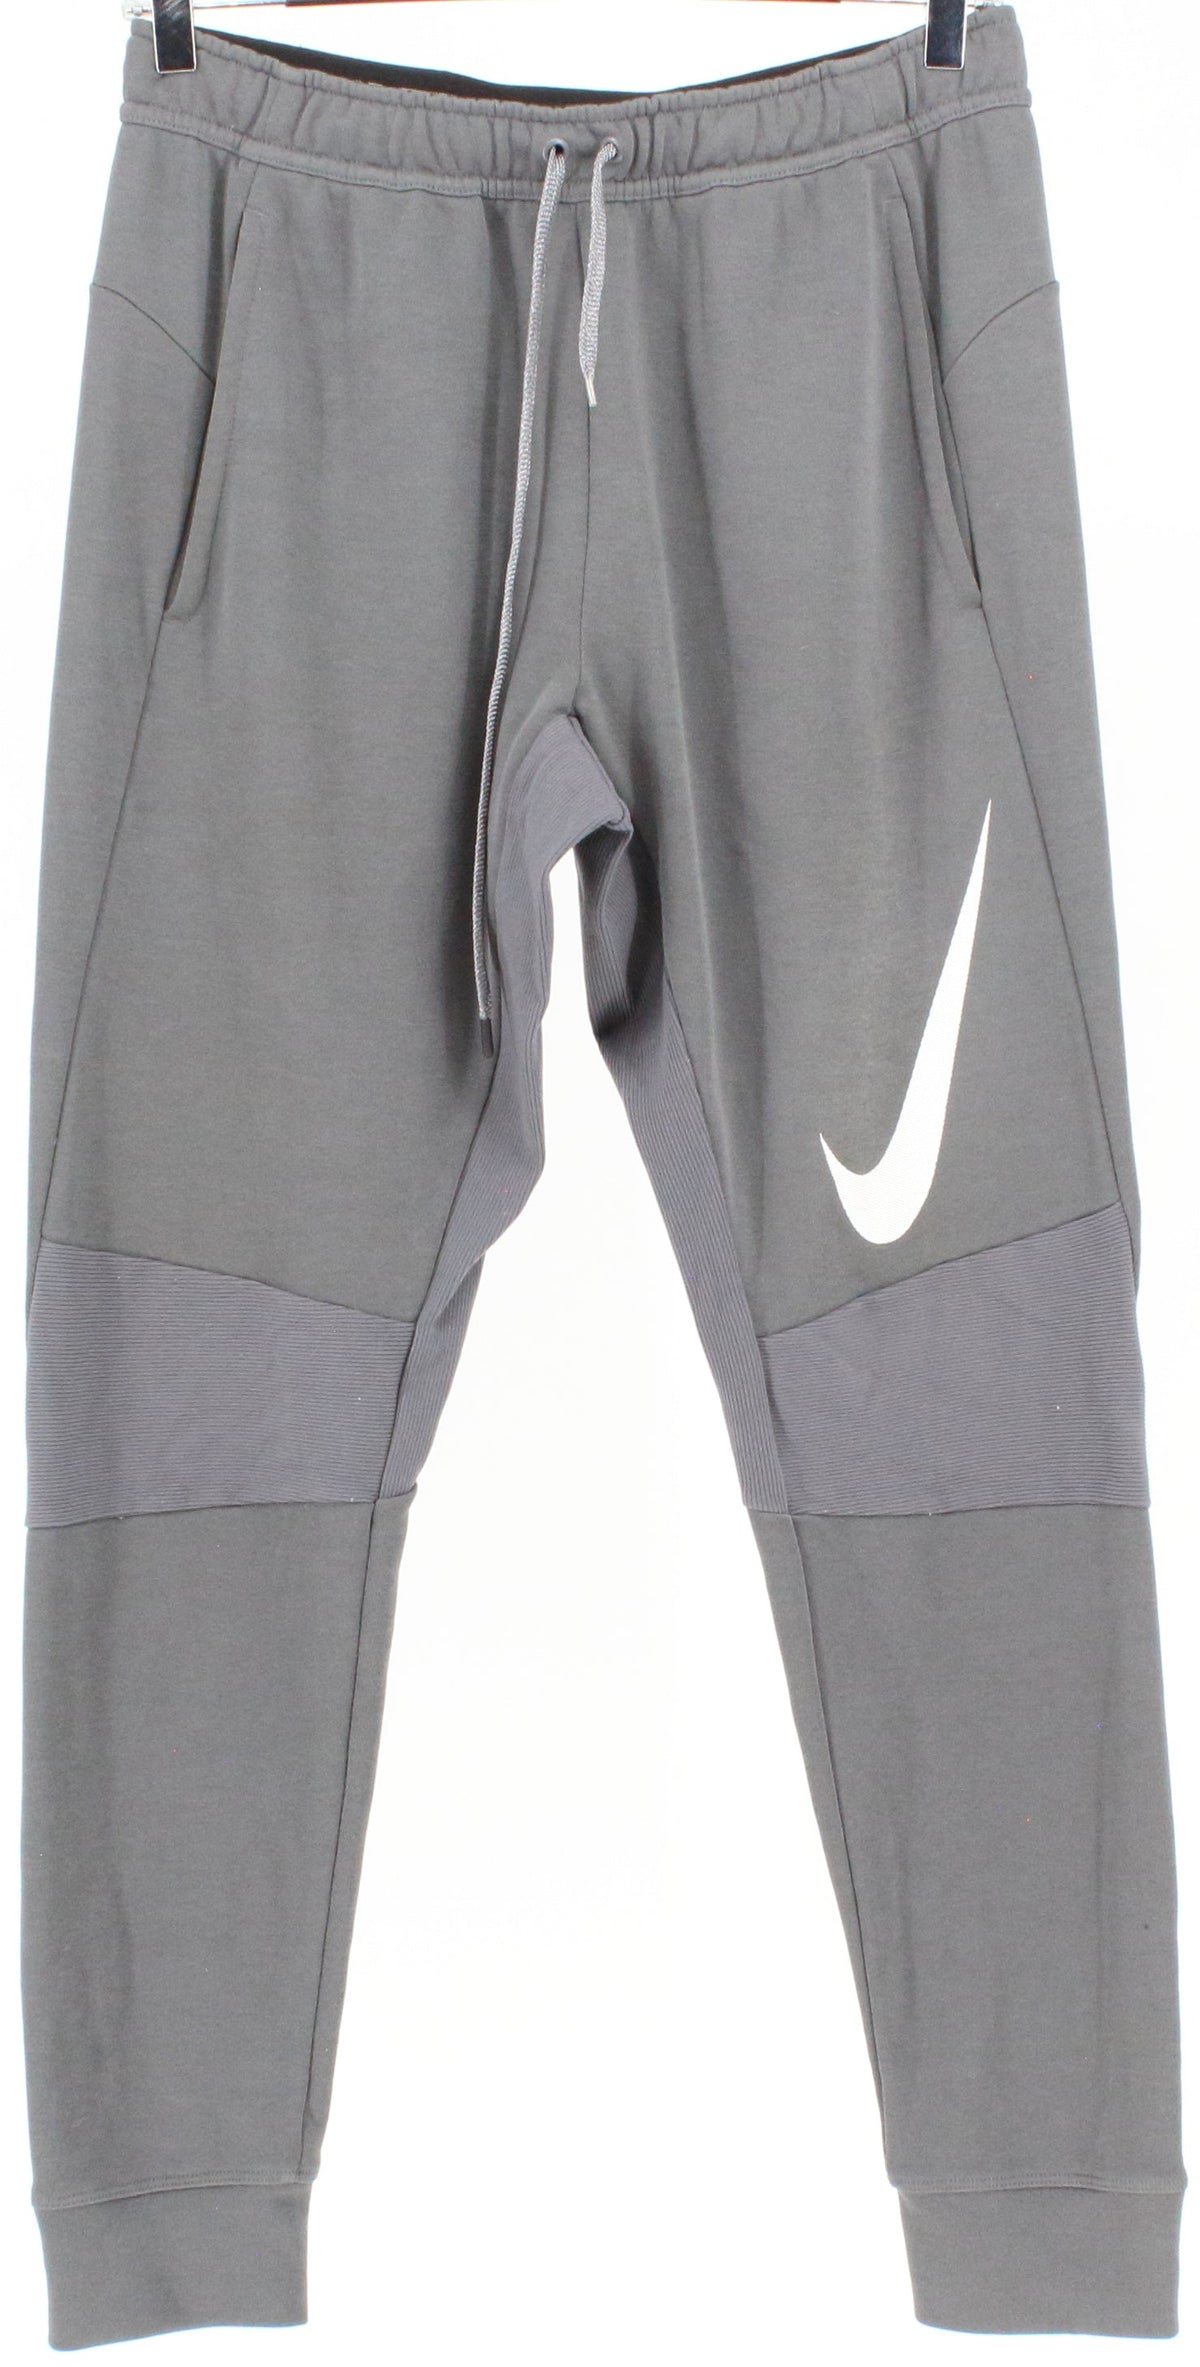 Nike Dri-Fit Grey Men's Pants